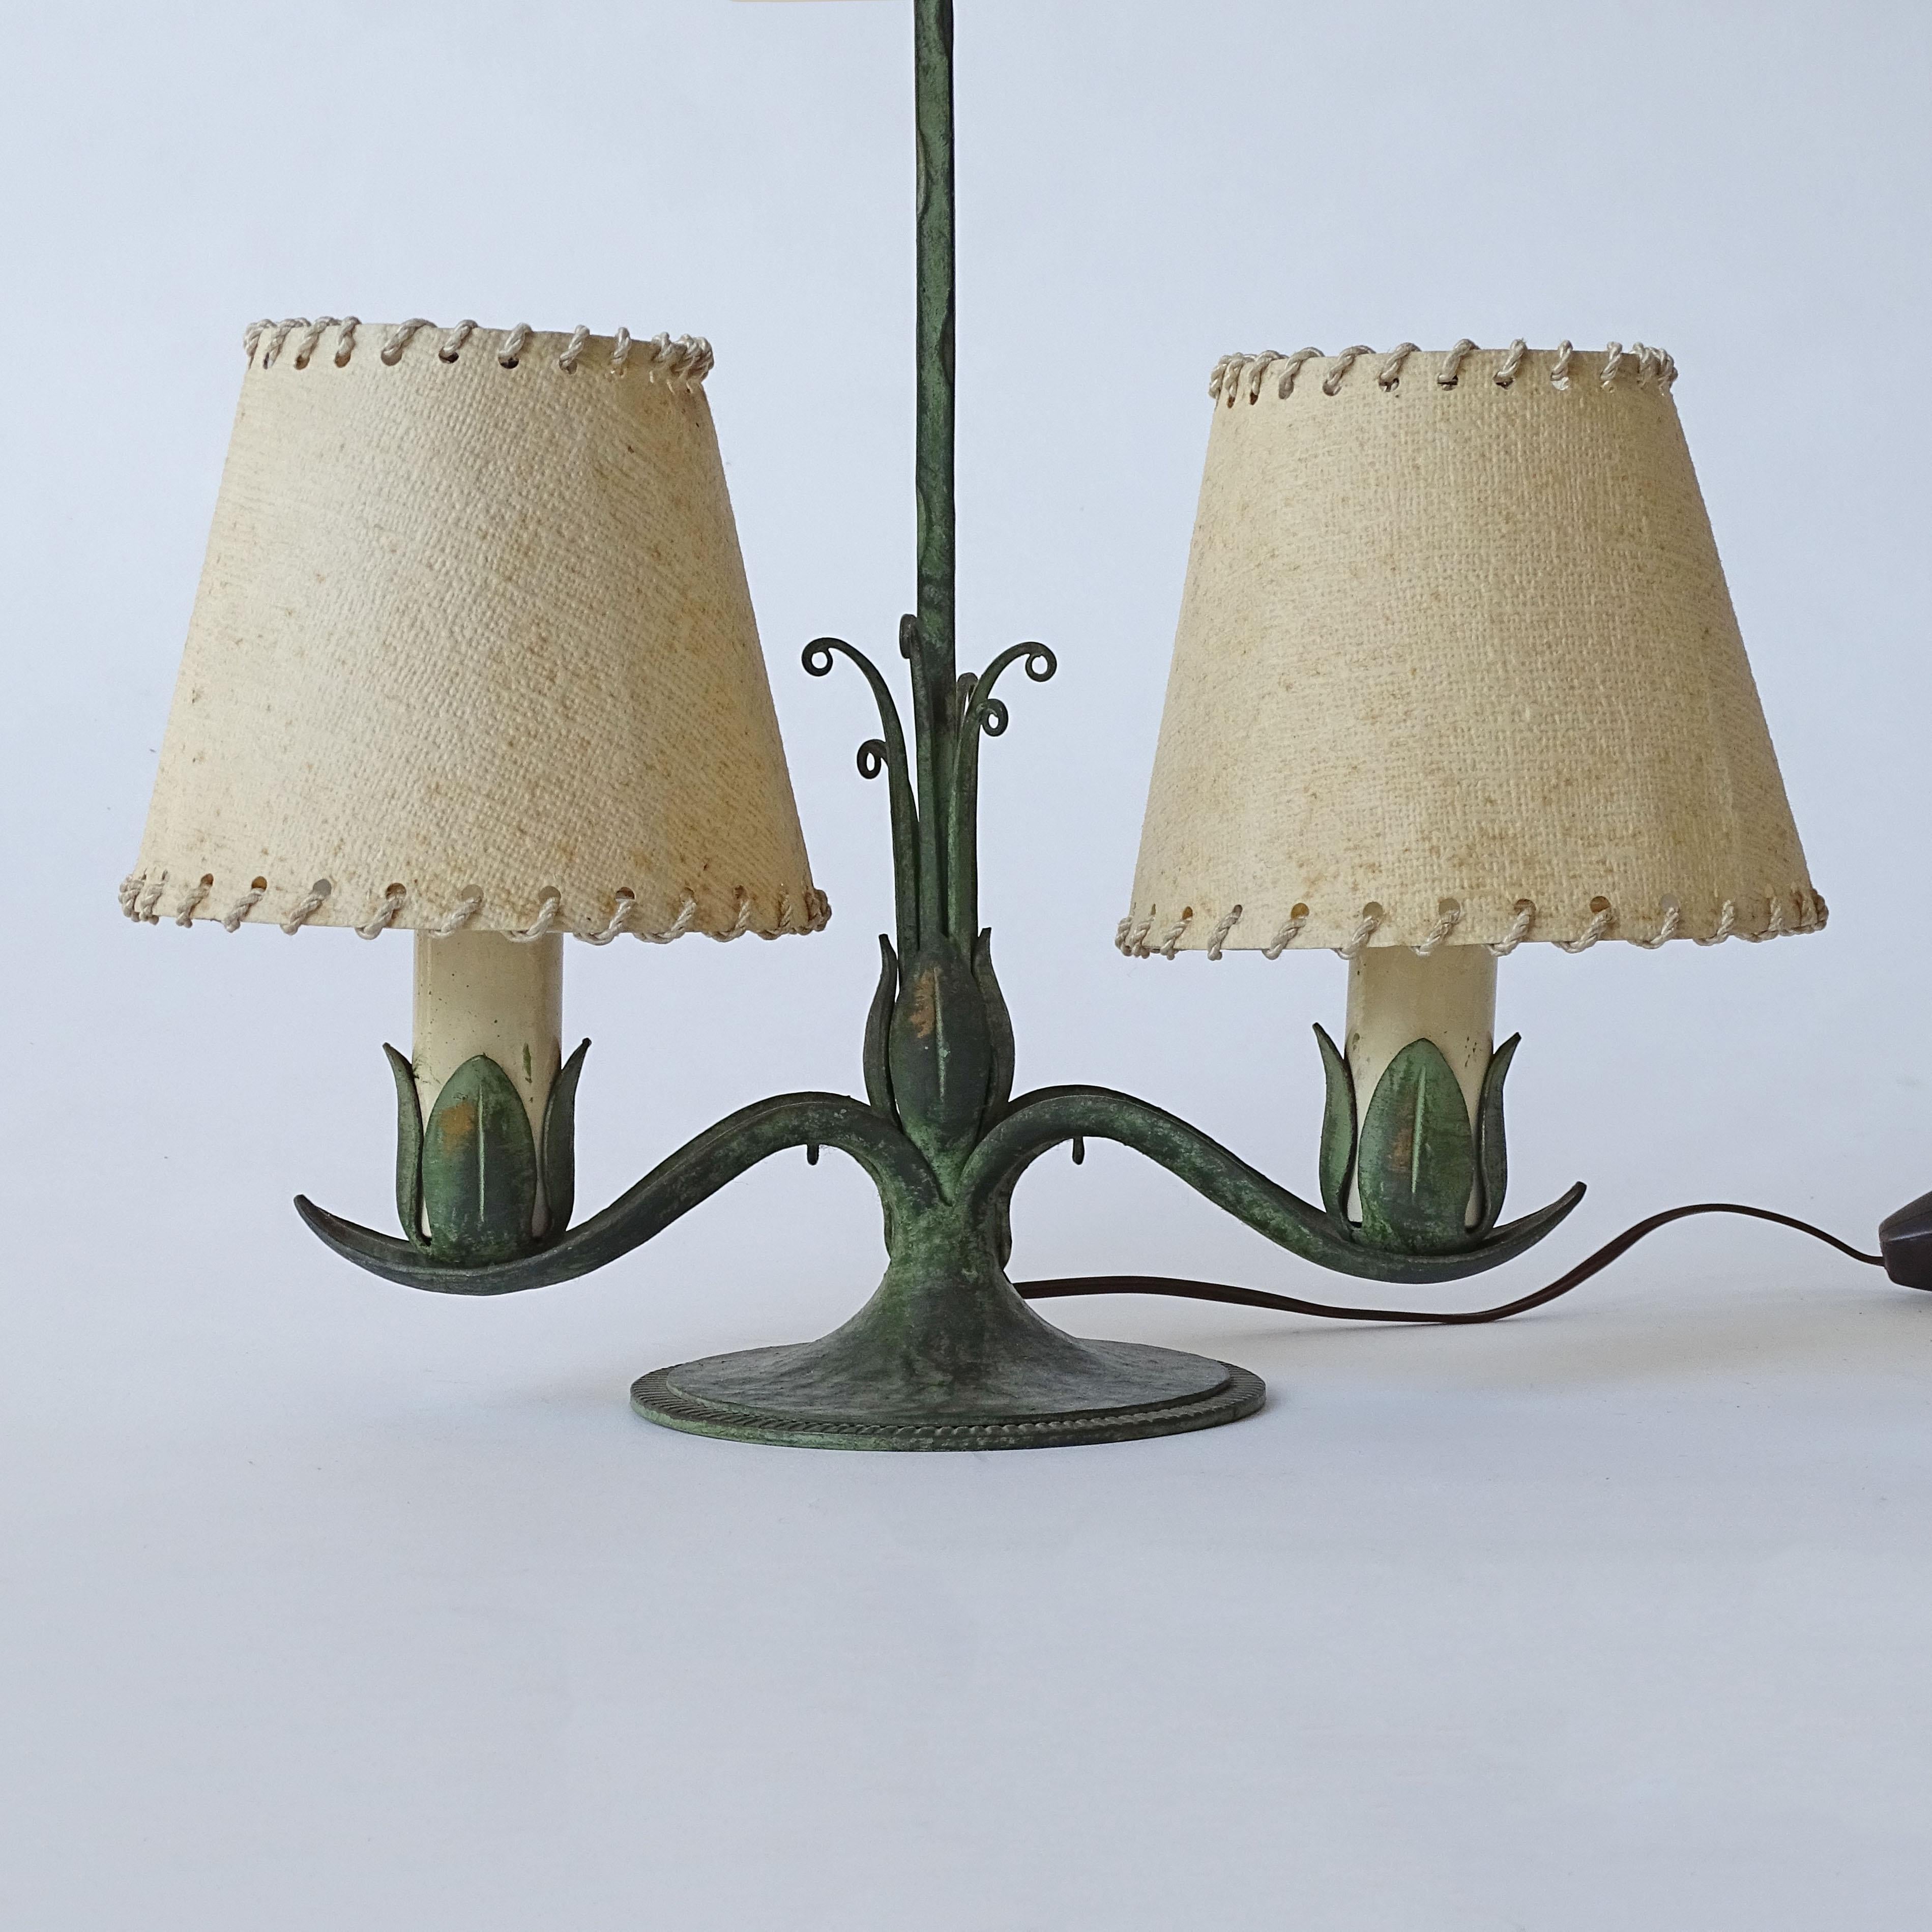 Italienische 1940er Jahre Portable Schmiedeeisen Tischlampe.
Trägt zwei Glühbirnen
Wird dem Werk von Carlo Rizzarda zugeschrieben.